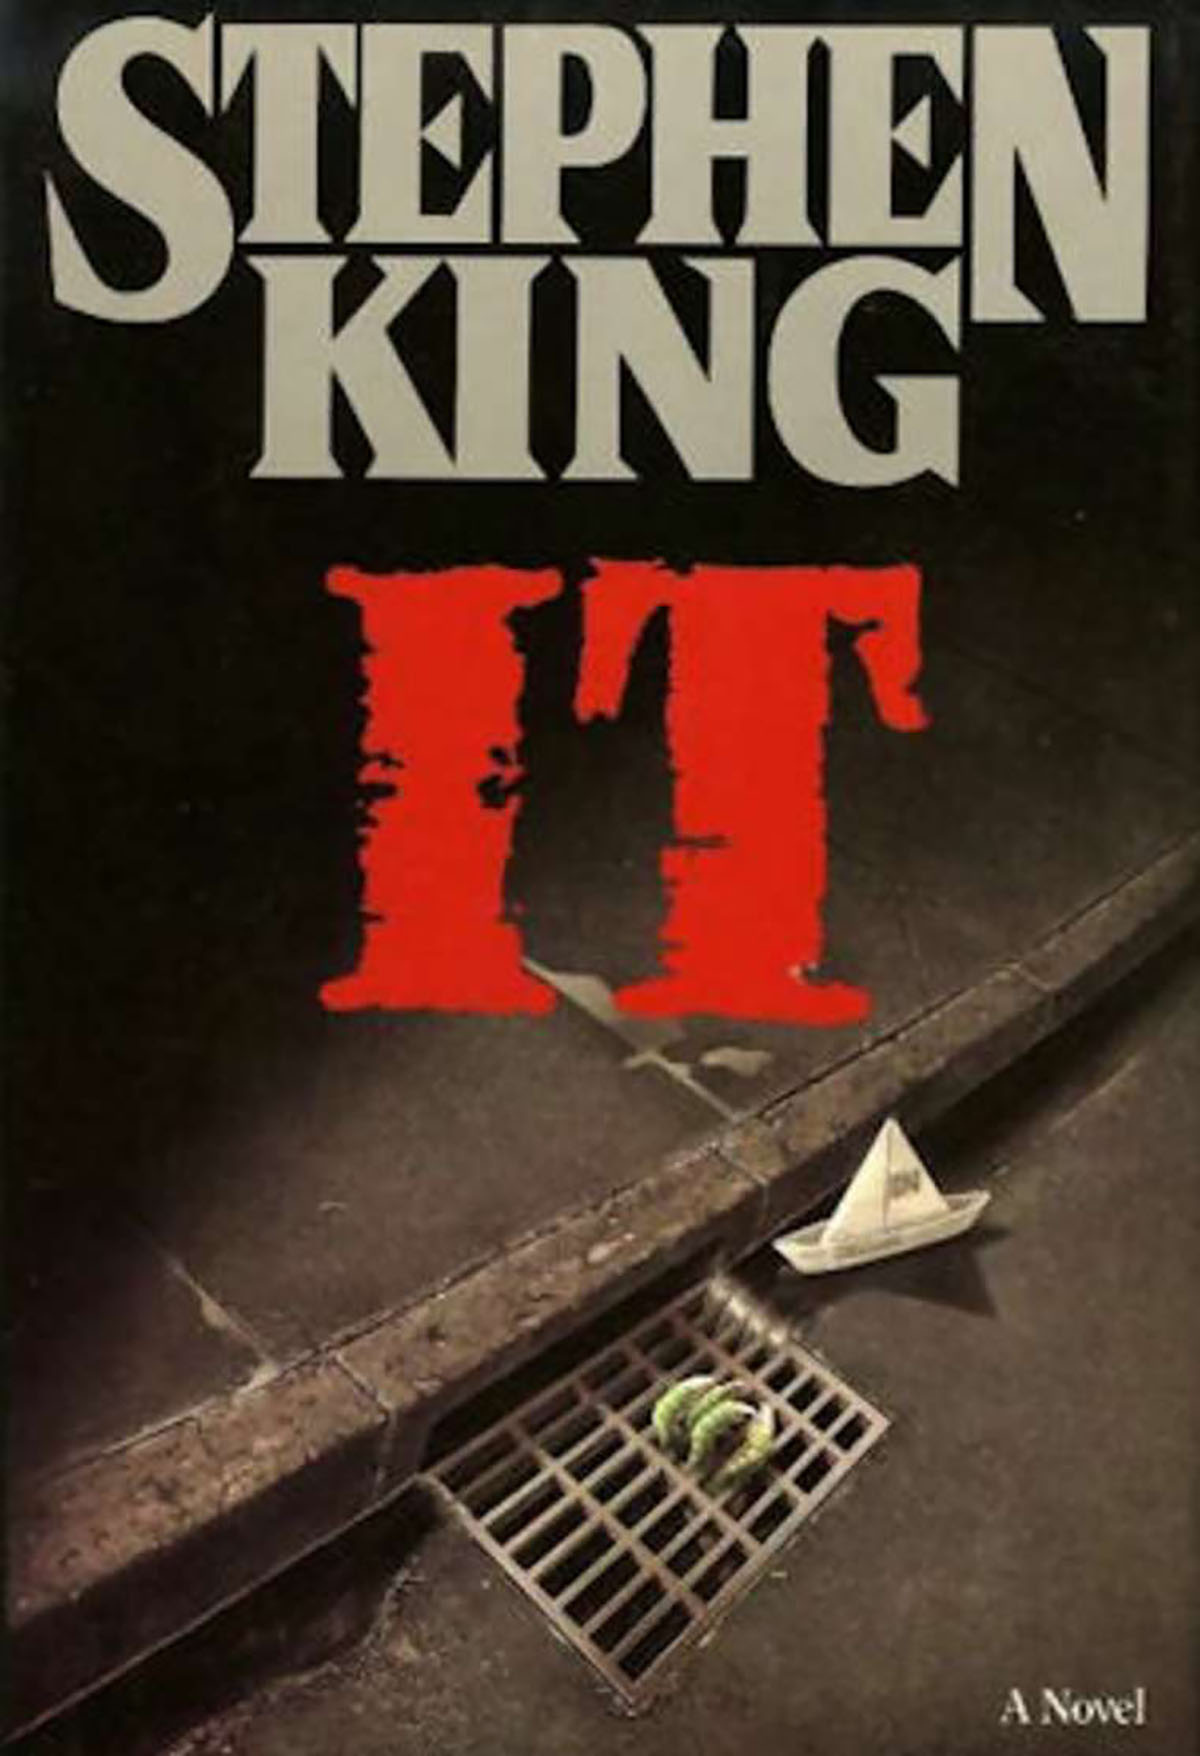 Stephen King: IT